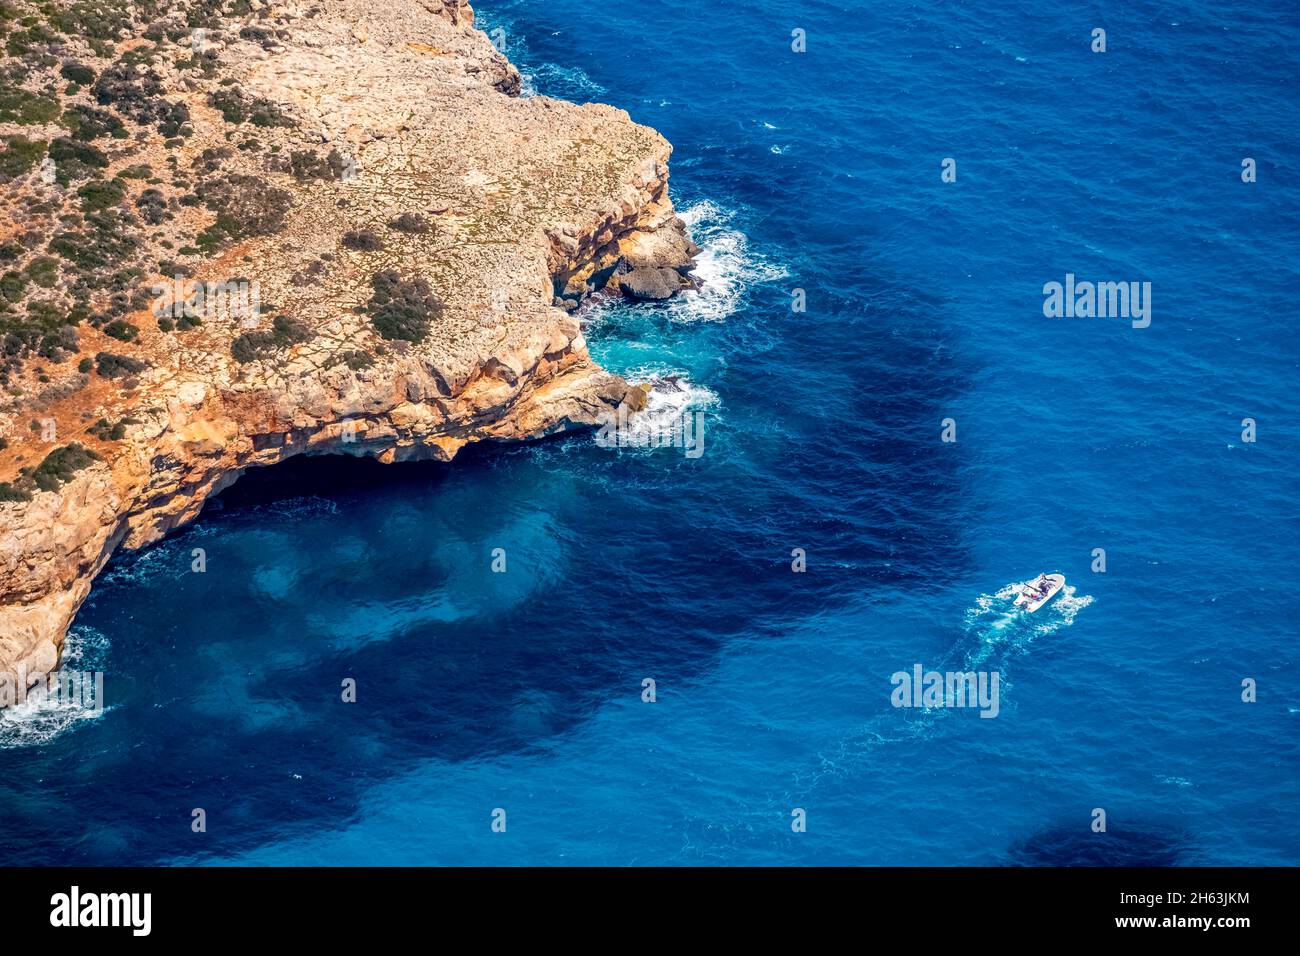 vue aérienne, côte rocheuse et bateau à moteur en face de manacor, îles baléares, majorque, espagne Banque D'Images